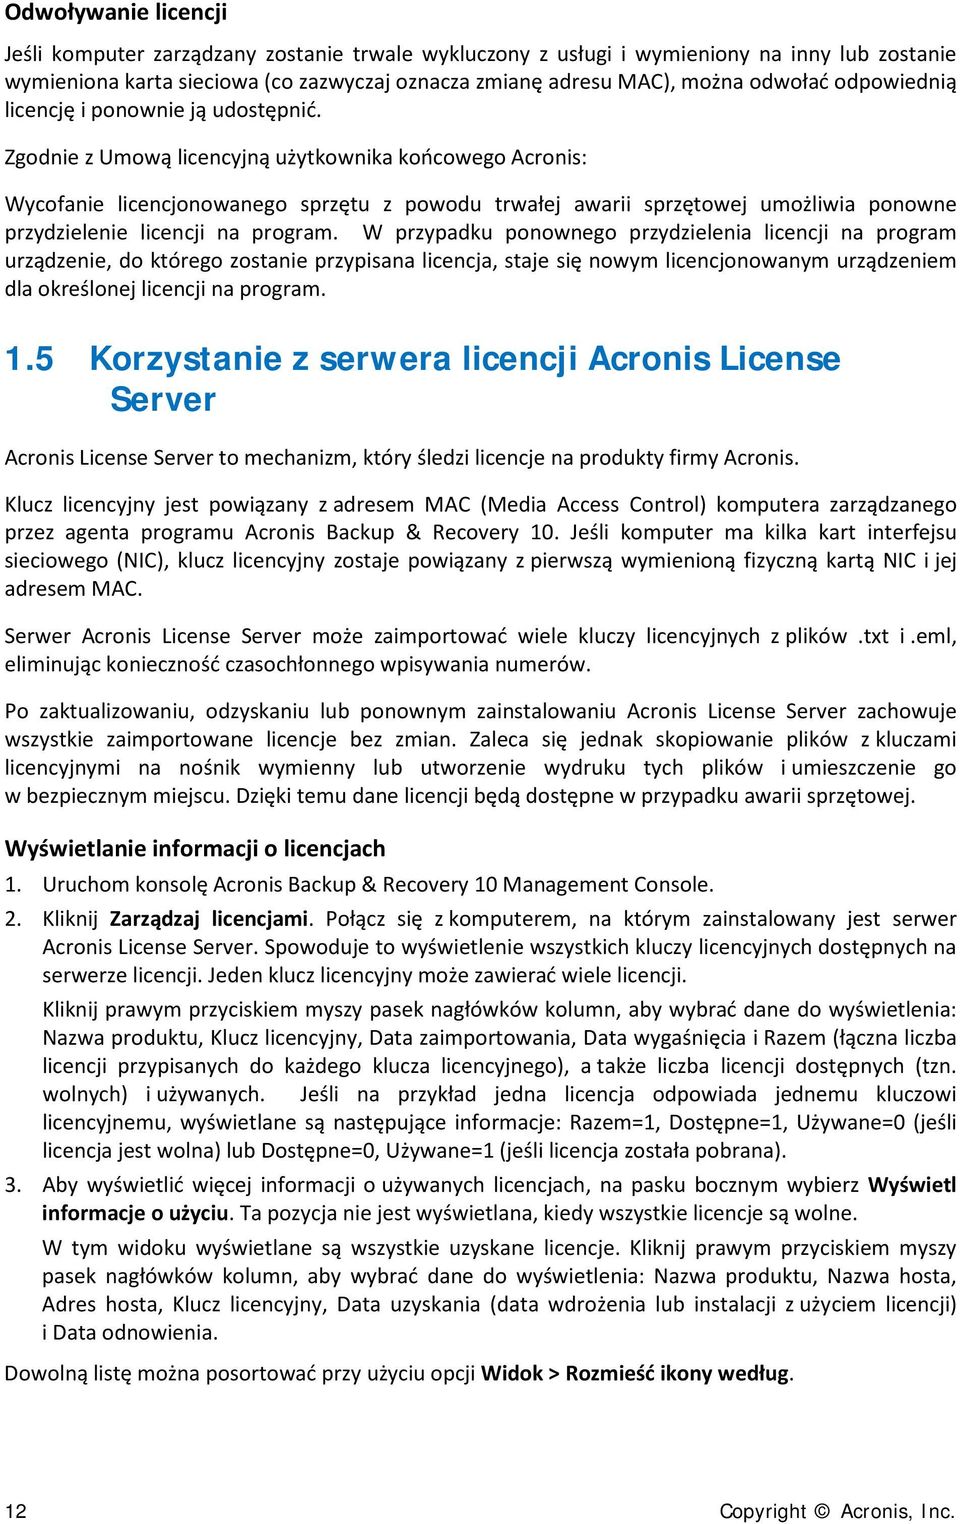 Zgodnie z Umową licencyjną użytkownika końcowego Acronis: Wycofanie licencjonowanego sprzętu z powodu trwałej awarii sprzętowej umożliwia ponowne przydzielenie licencji na program.